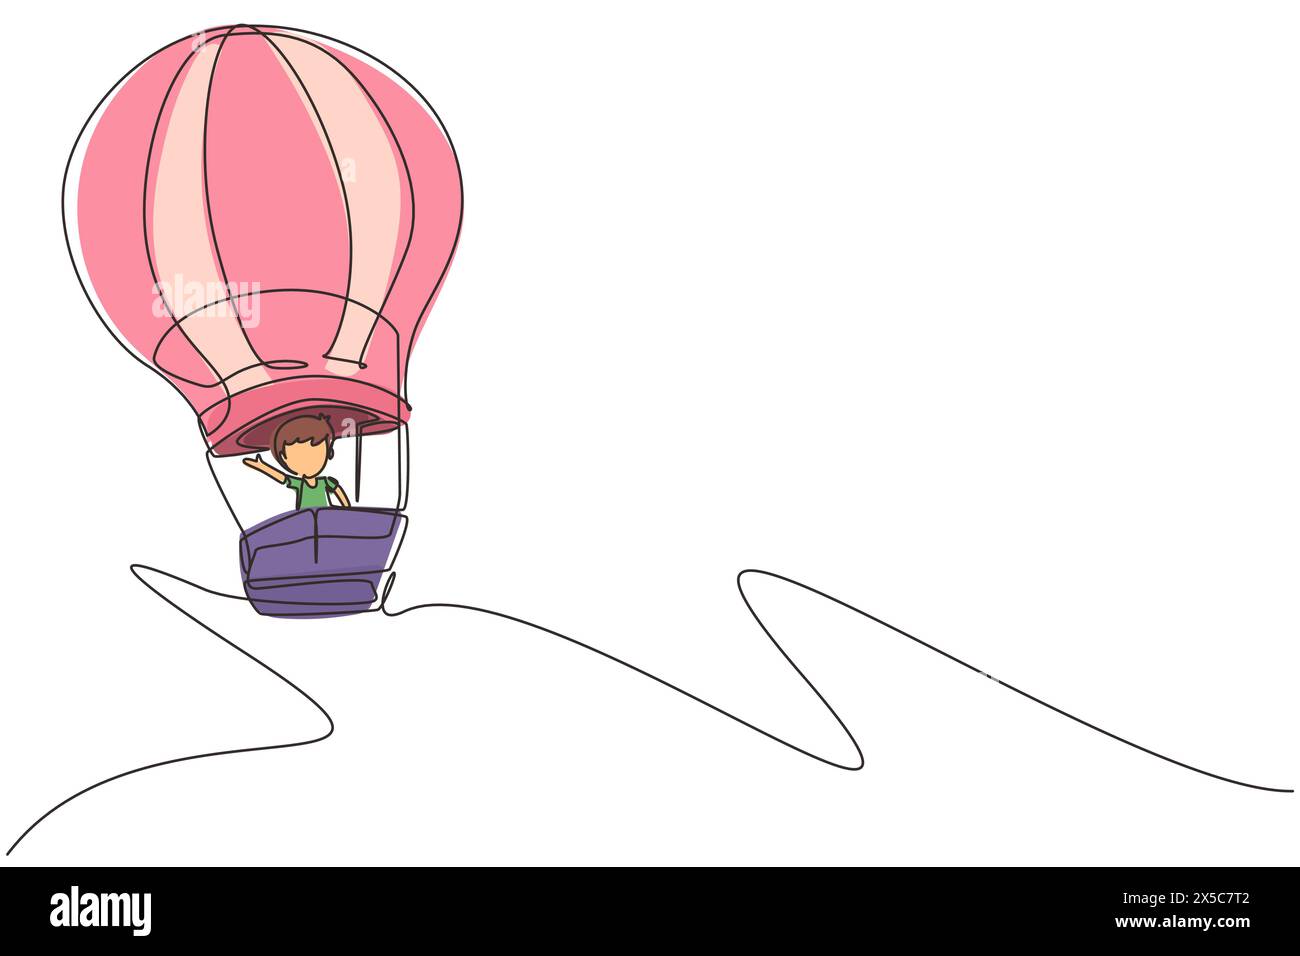 Eine einzige Linie, die einen kleinen Jungen im Heißluftballon am Himmel zeigt. Glückliche Kinder, die im Heißluftballon fahren. Kinder im Heißluftballon Abenteuer. Konti Stock Vektor